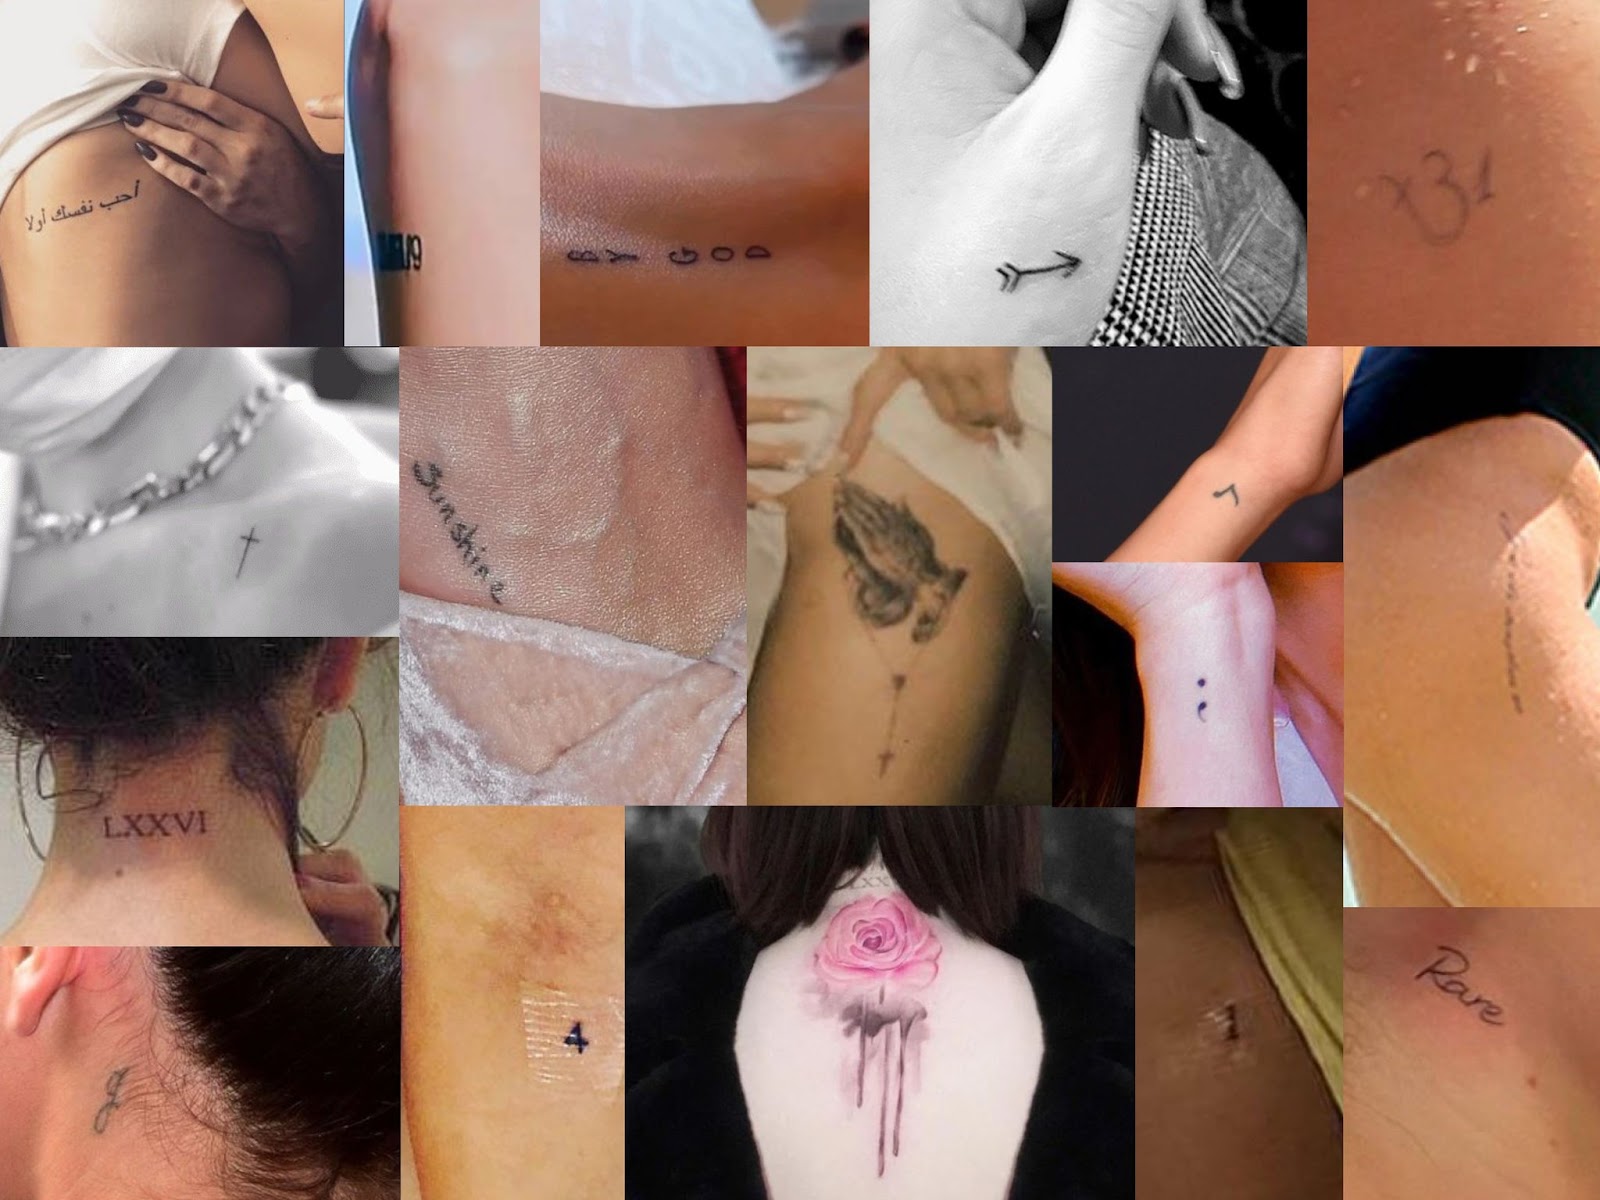 καωyα on X: "Selena Gomez's tattoos >>>>> https://t.co/66cm8TzcCJ" / X